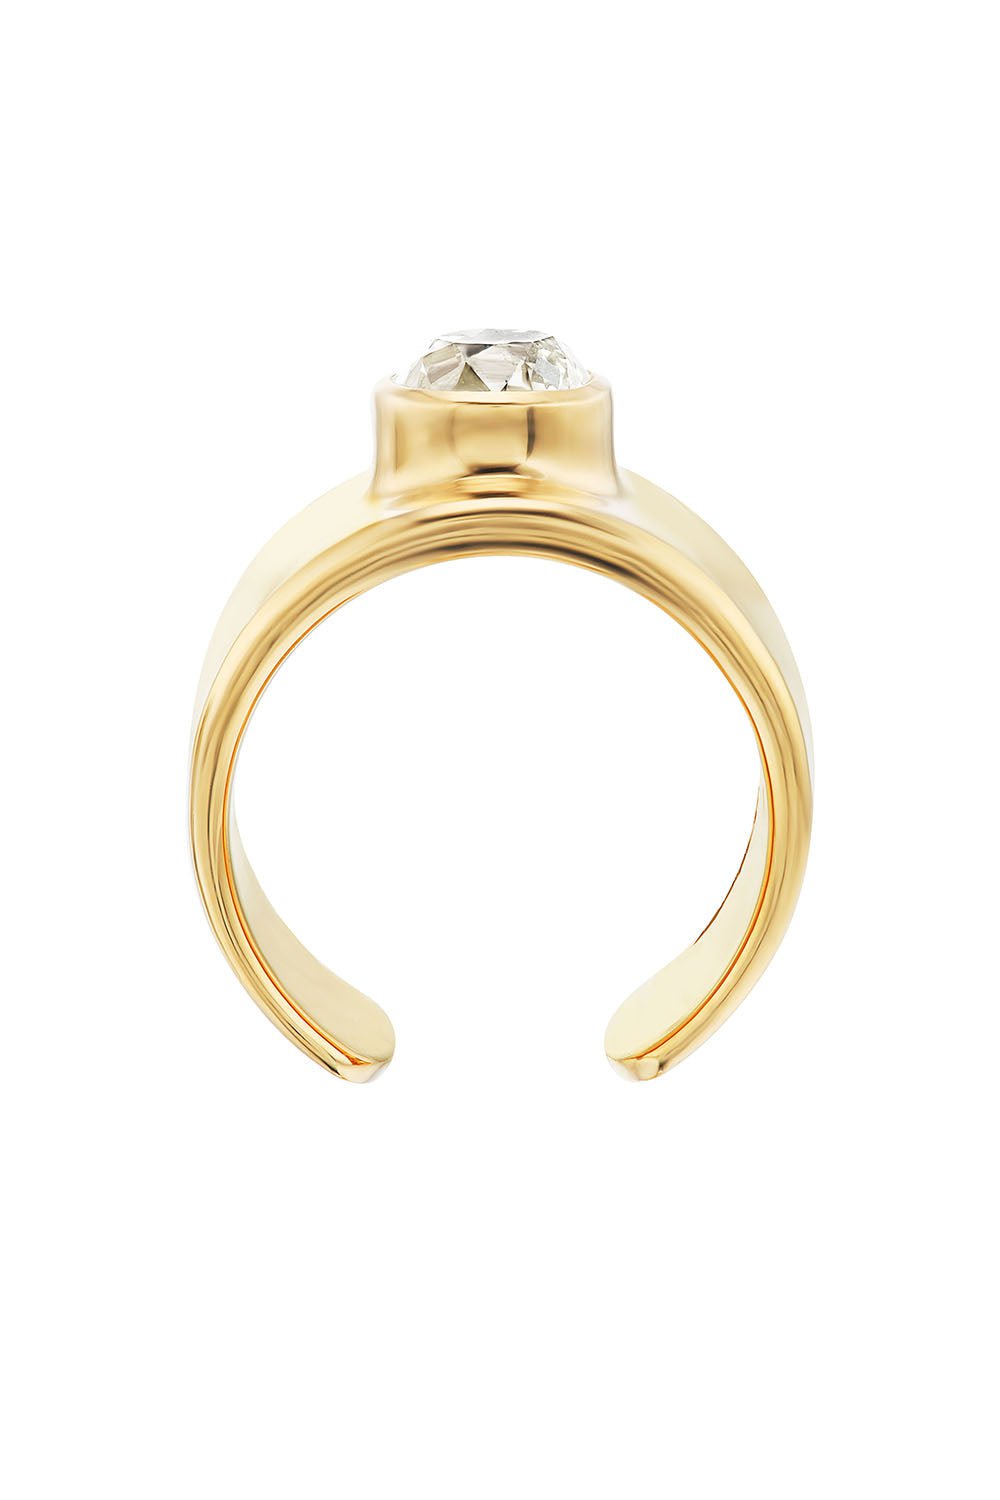 UNIFORM OBJECT-Diamond Cuff Ring-YELLOW GOLD